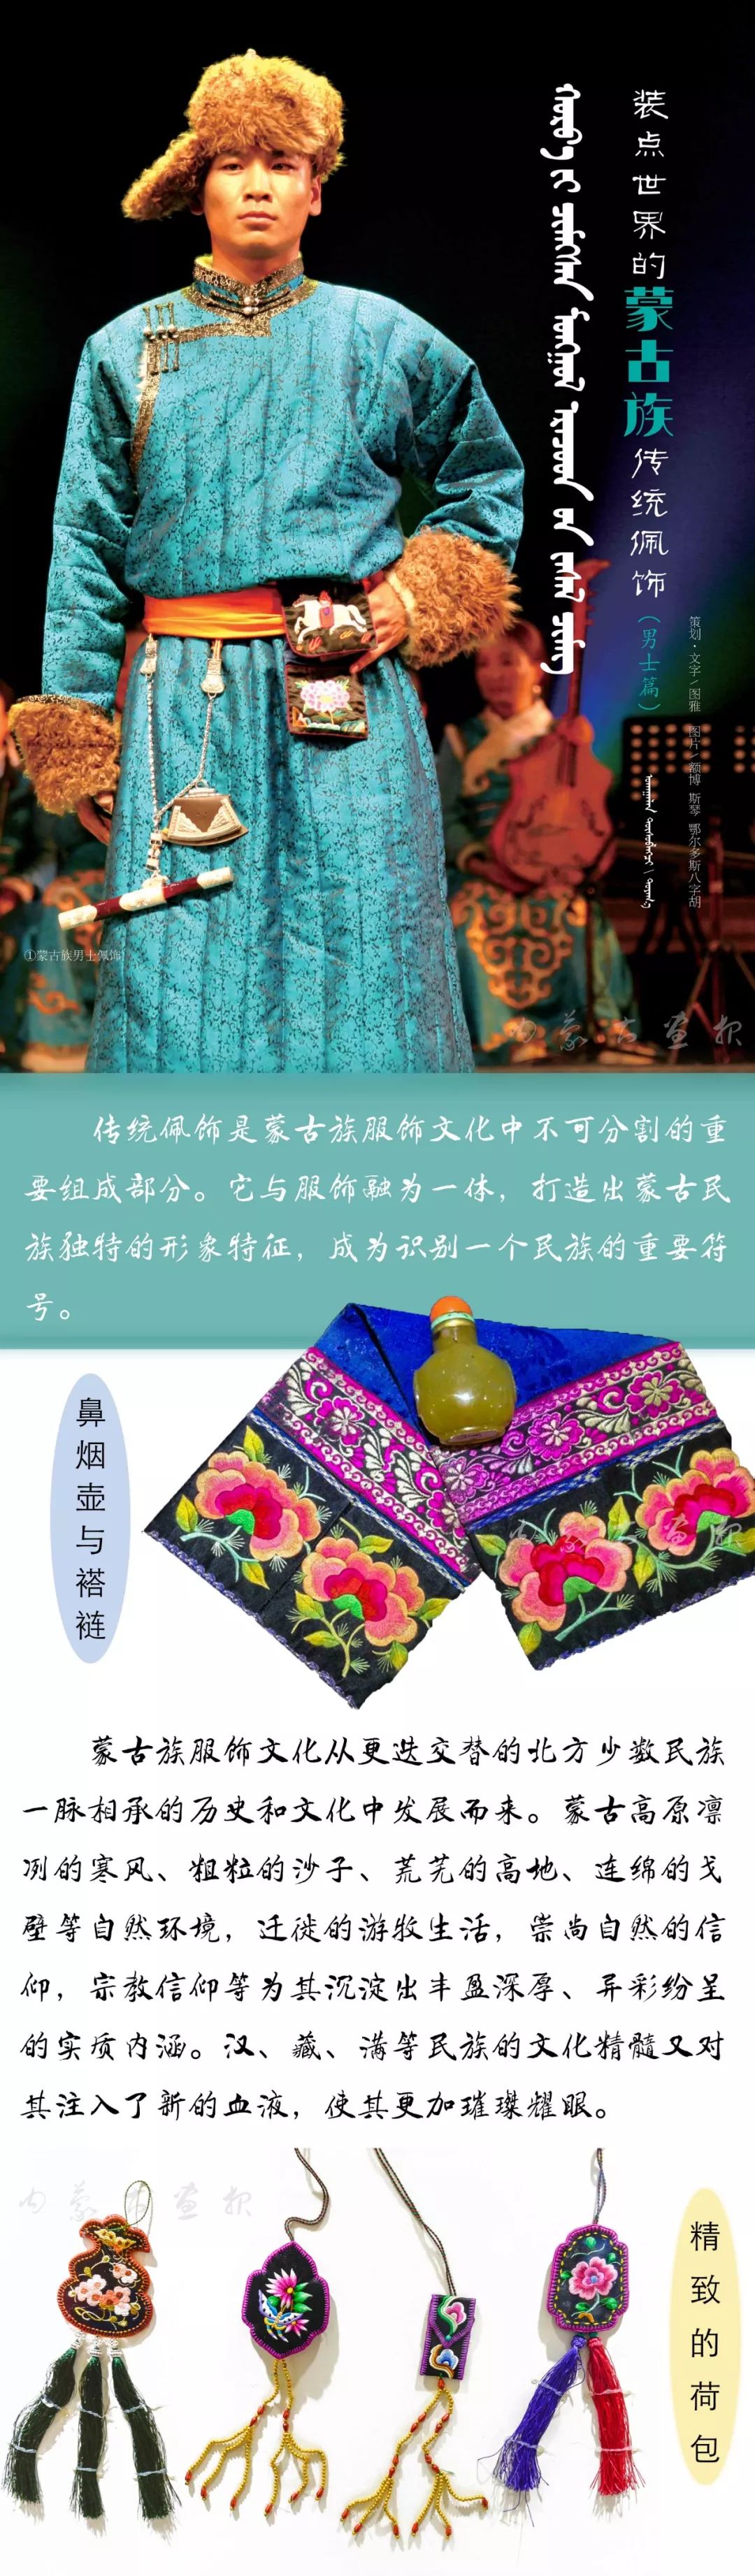 装点世界的蒙古族传统佩饰 | 男士篇 第8张